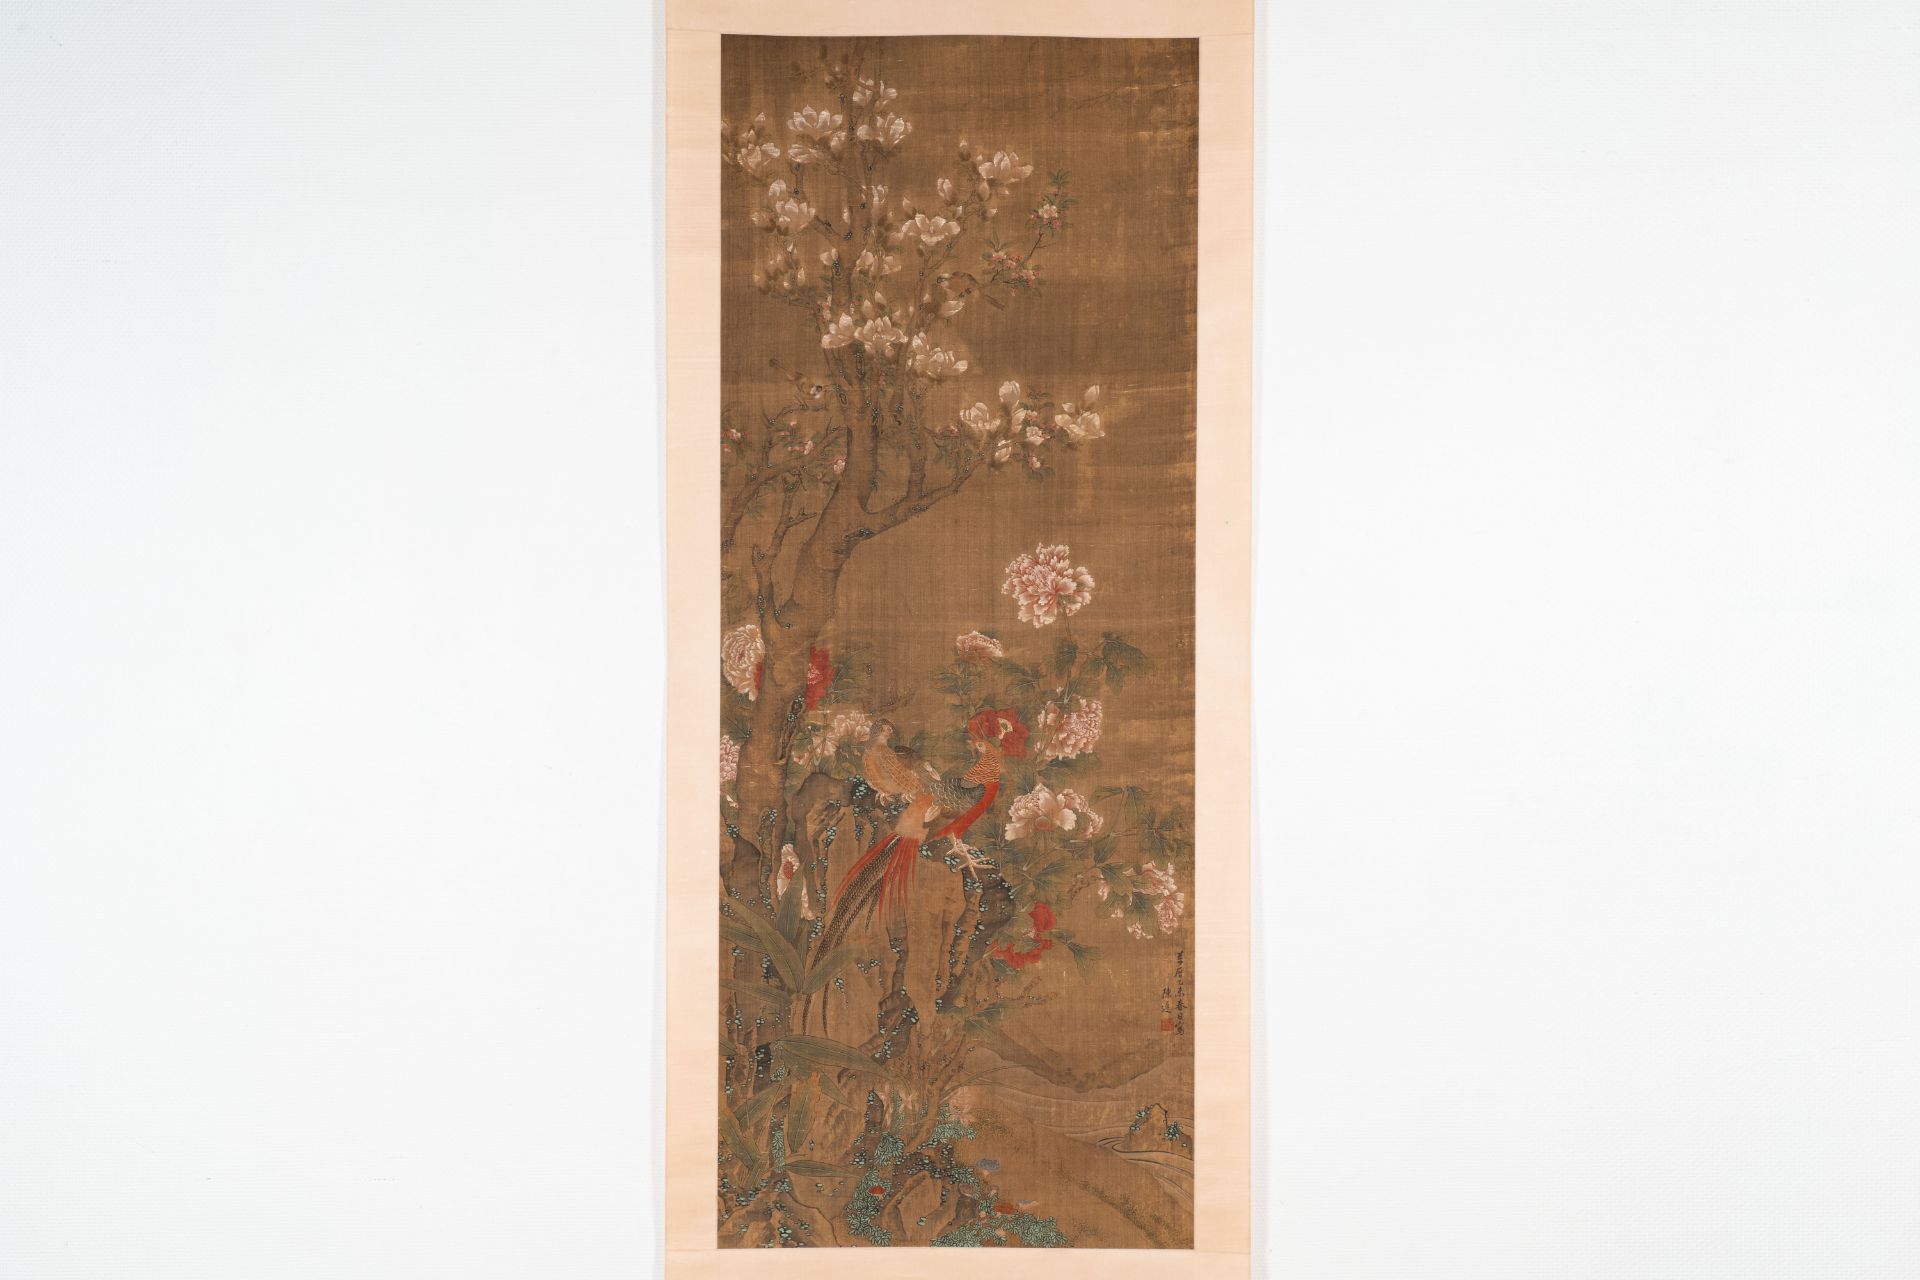 Chen Zun é™³éµ (1723-?): 'Magnolia and pheasant', ink and colour on silk, dated 1775